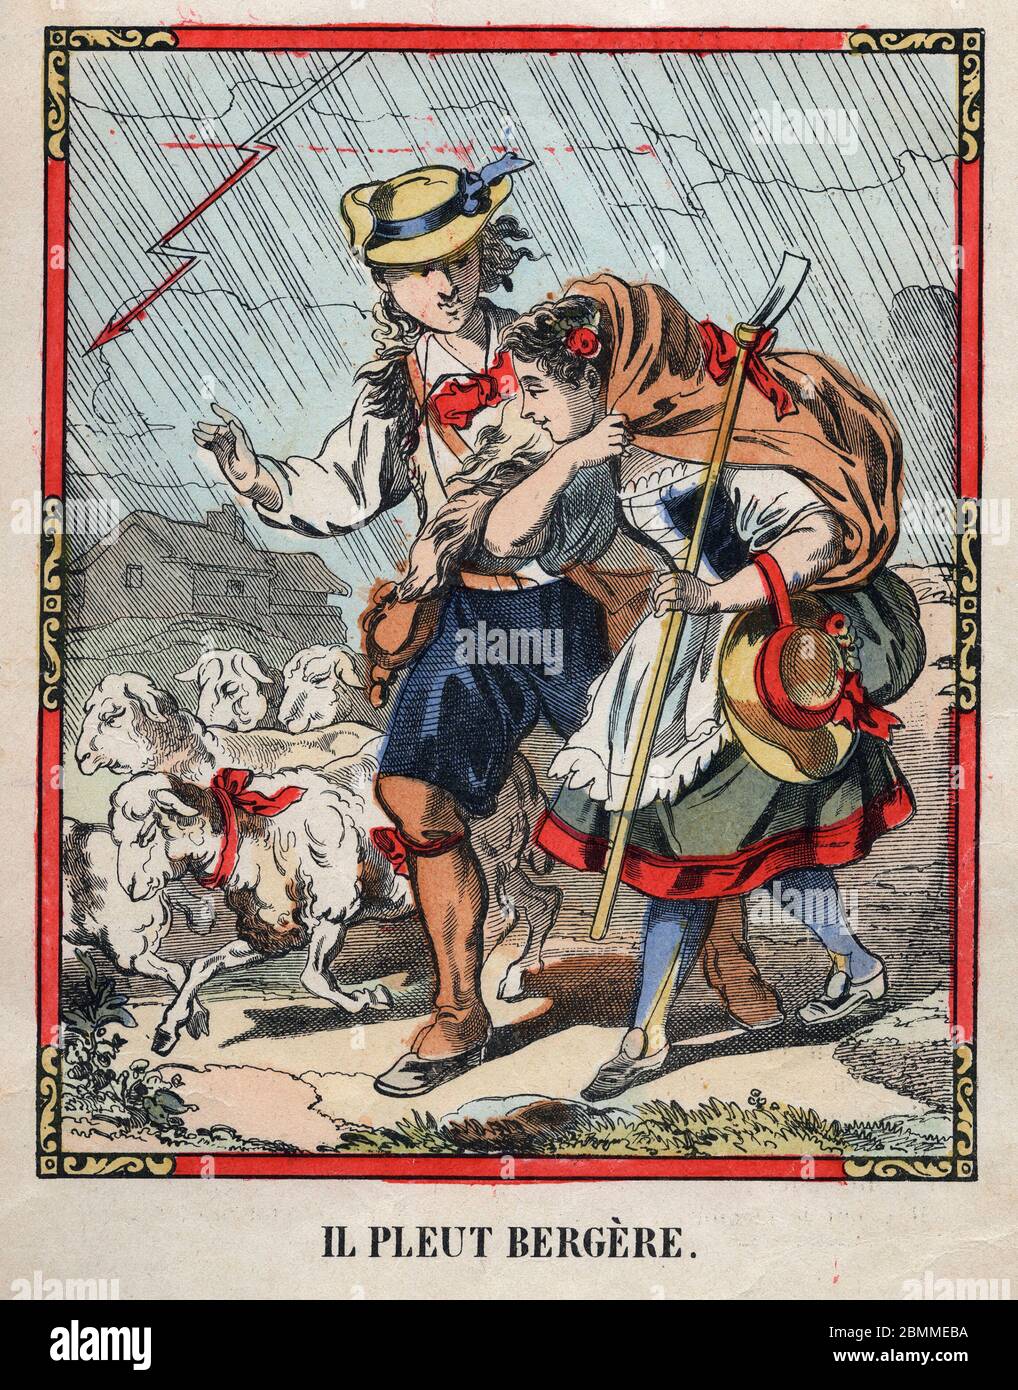 Illustration Anonyme de la chanson populaire (comptine pour enfant) 'Il pleut bergere' representant un berger abritant une jeune bergere sous la pluie Stockfoto